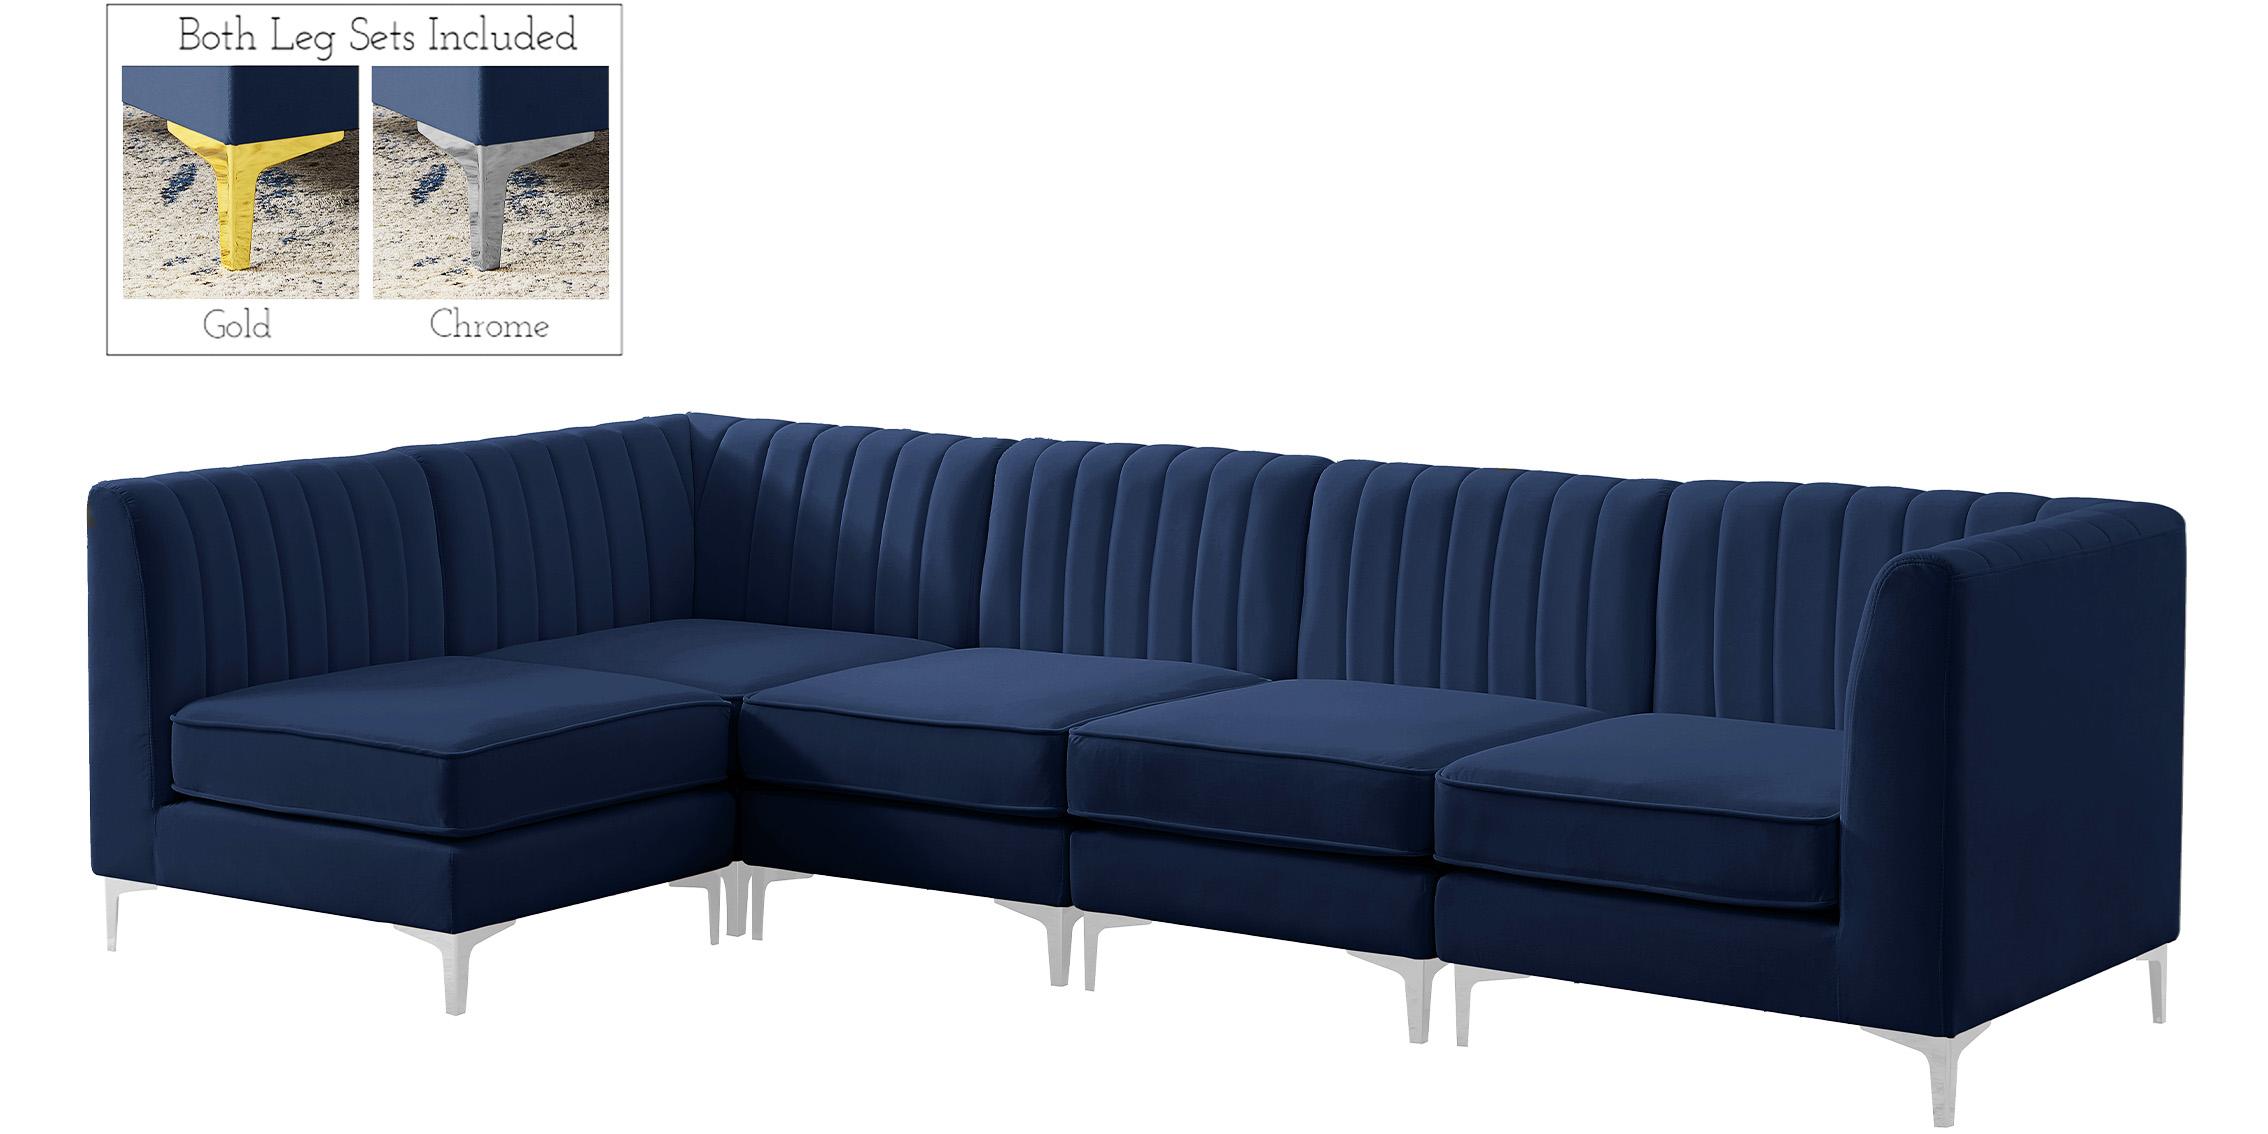 

    
Meridian Furniture ALINA 604Navy-Sec5B Modular Sectional Sofa Navy 604Navy-Sec5B
